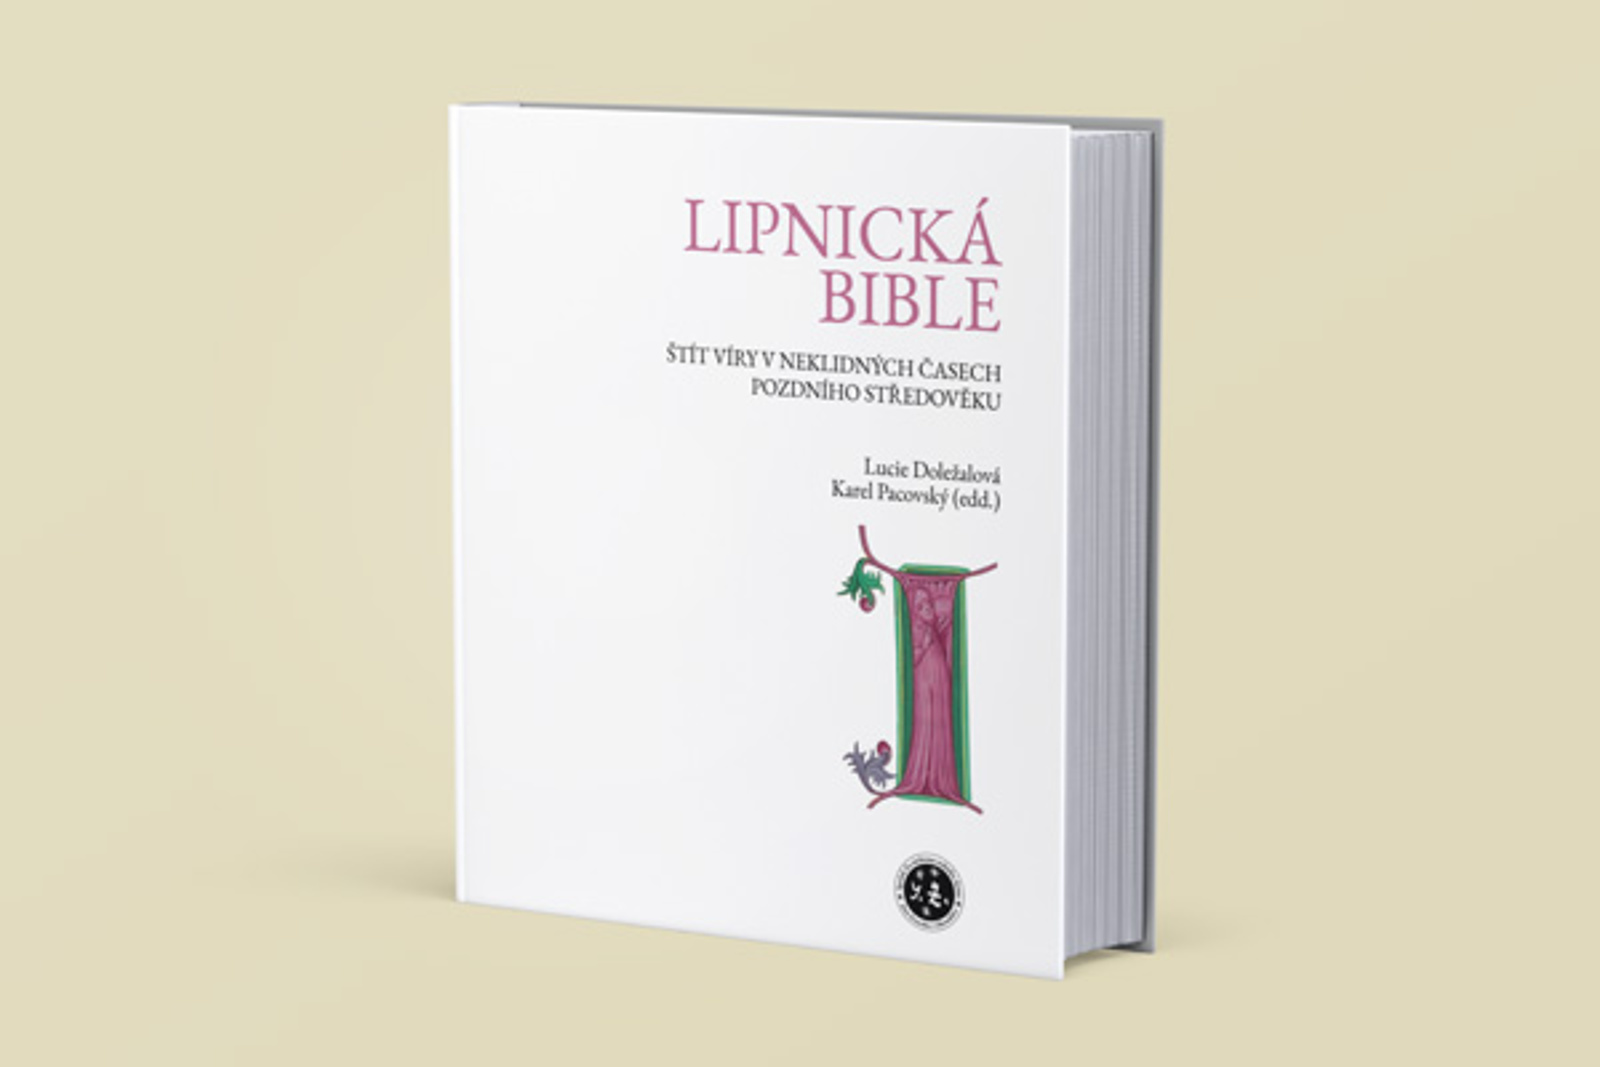 Unikátní Lipnická bible se vrátí domů ze Spojených států domů, podívejte se  - Jihlavský deník